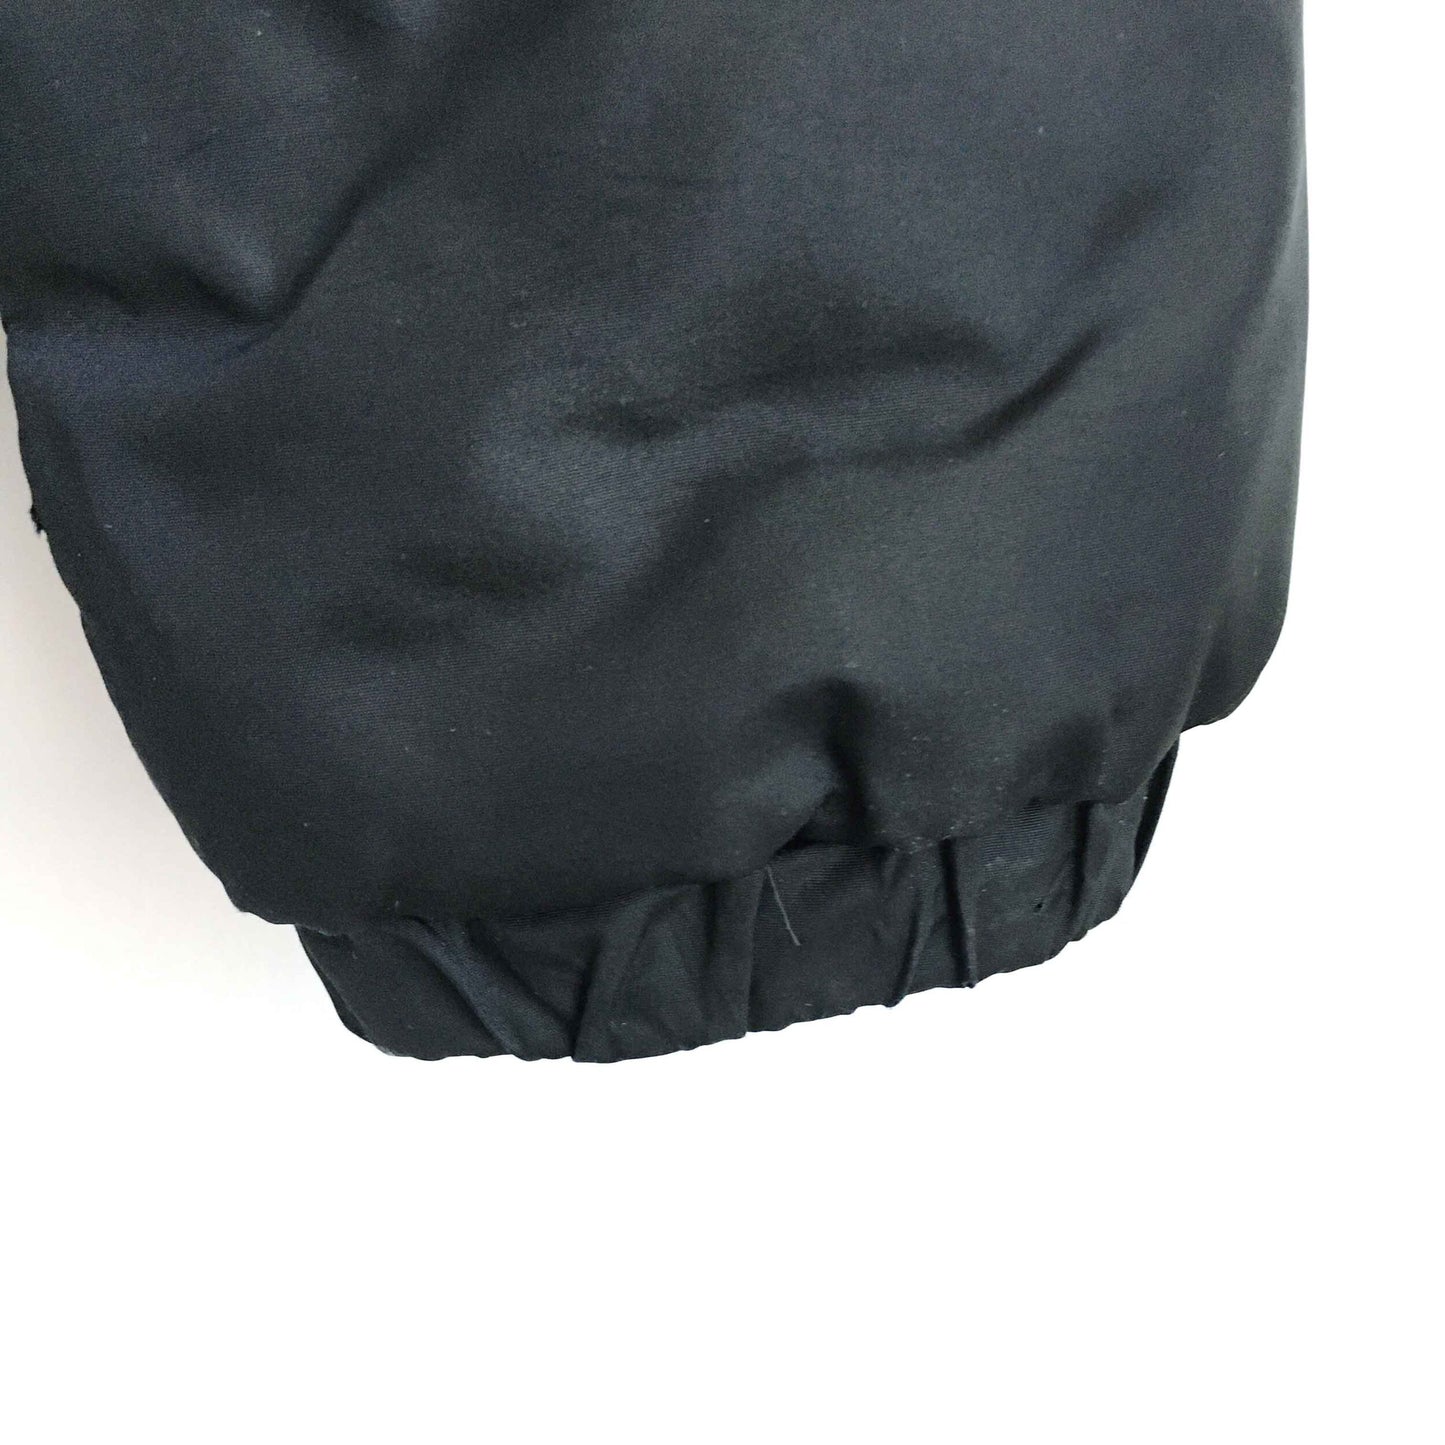 anne klein down fill puffer jacket - size medium